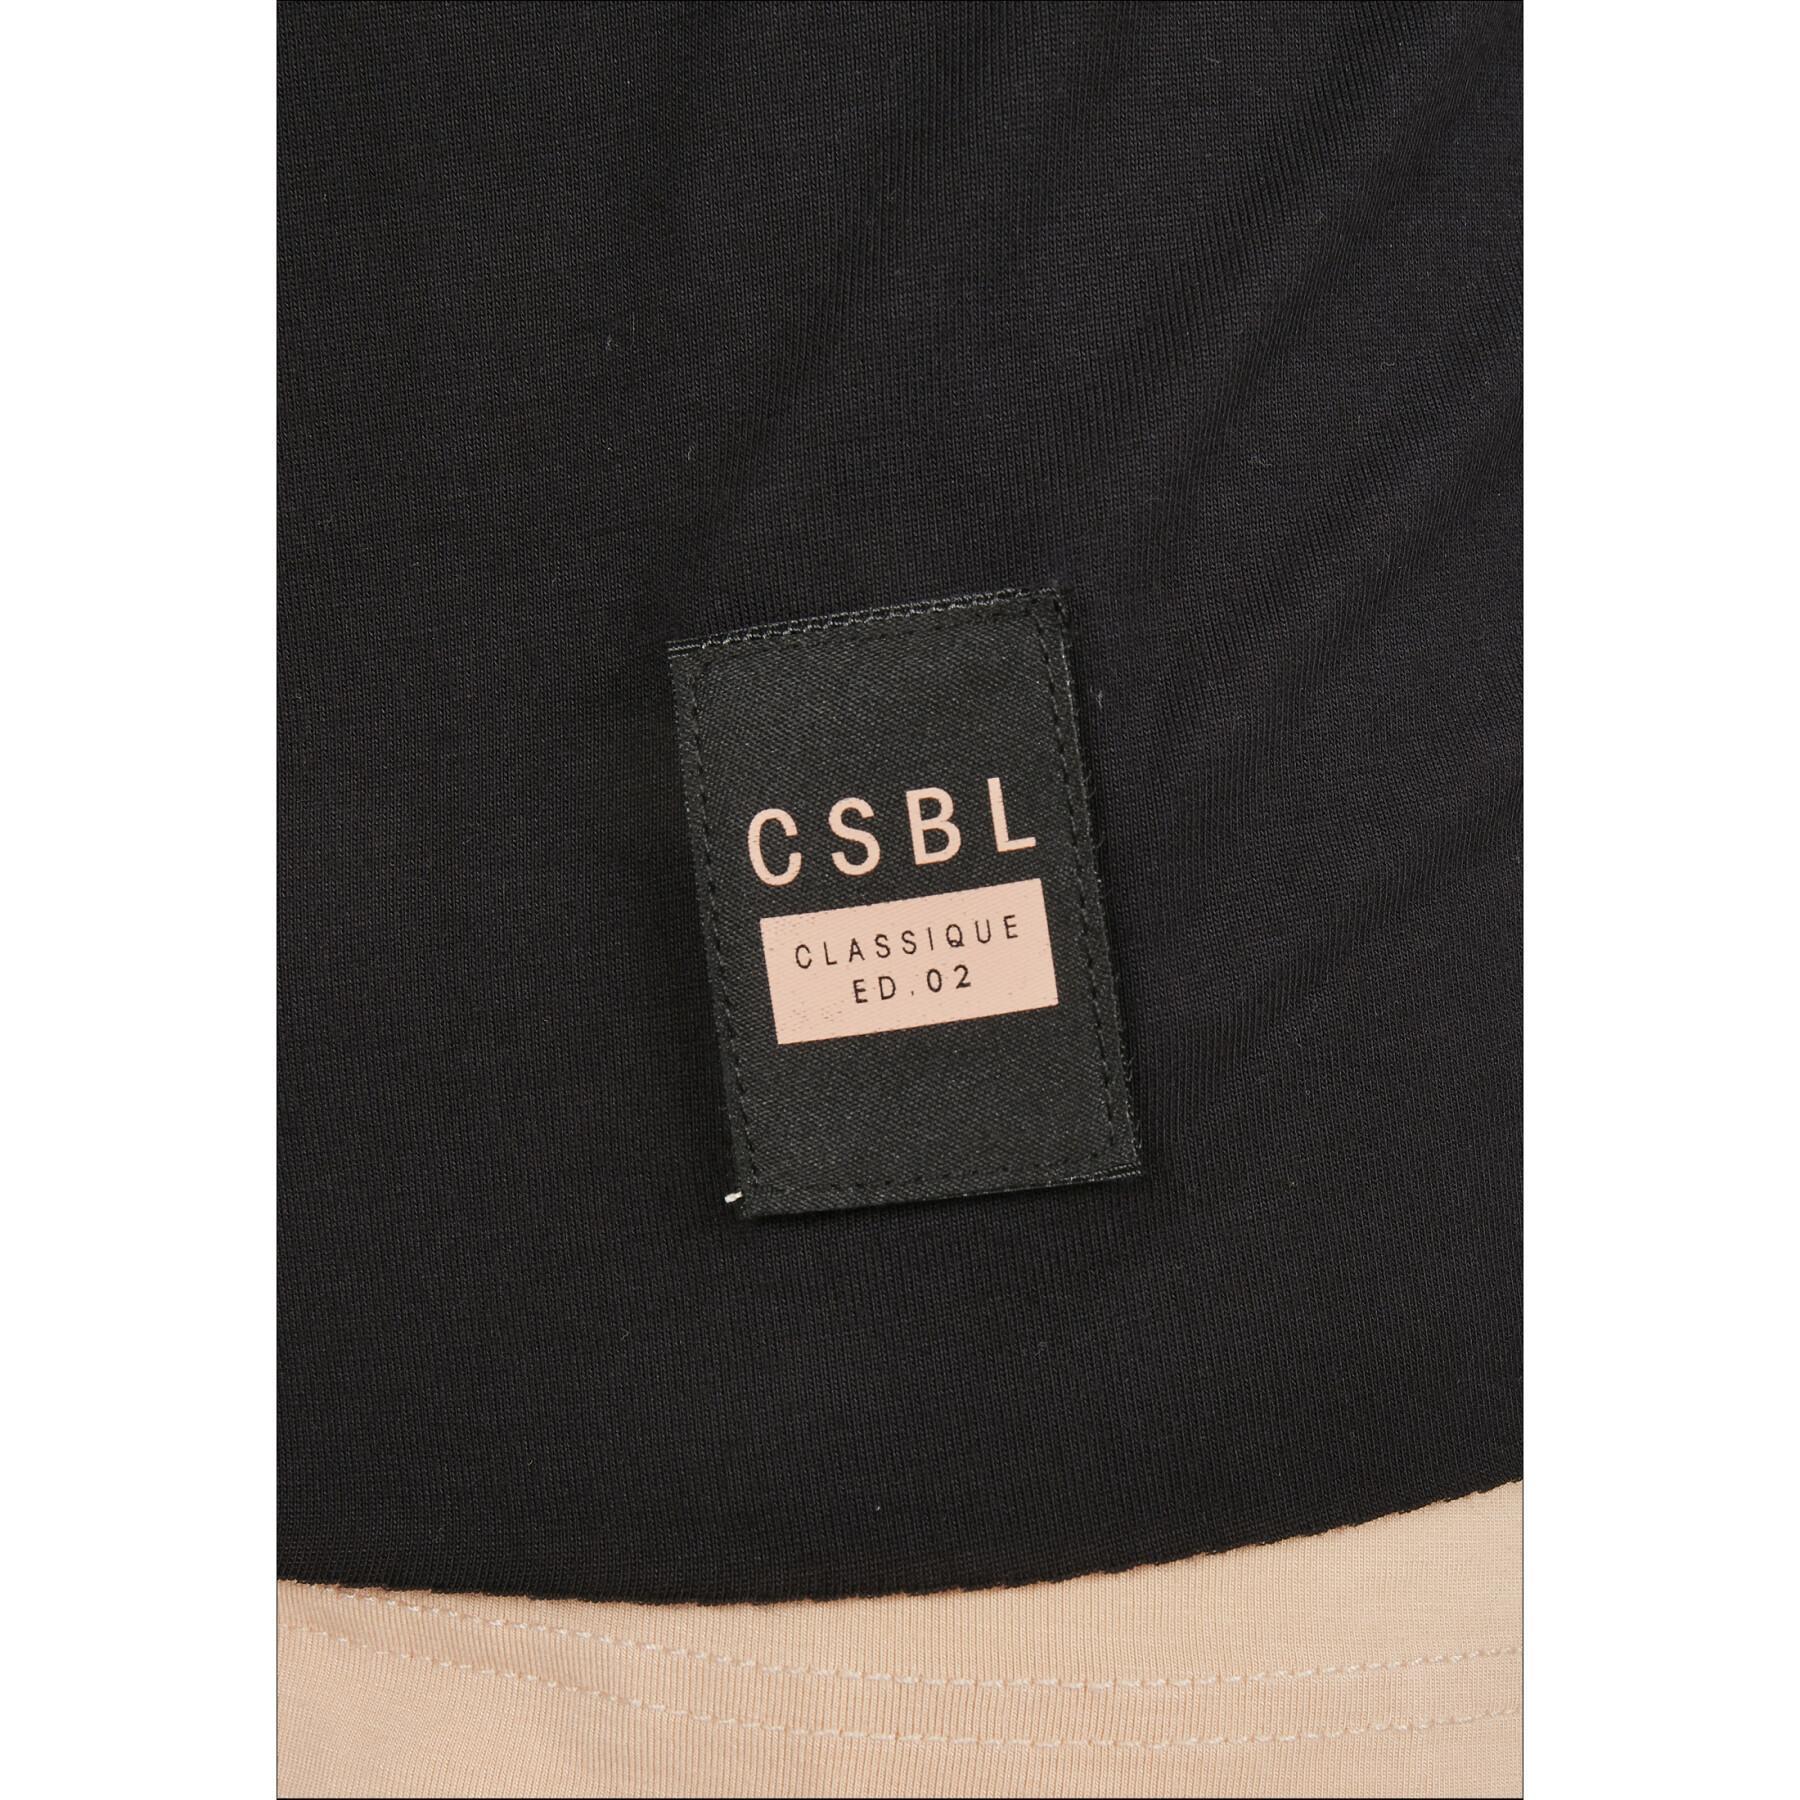 Koszulka z długim rękawem Cayler & Sons CSBL Deuces